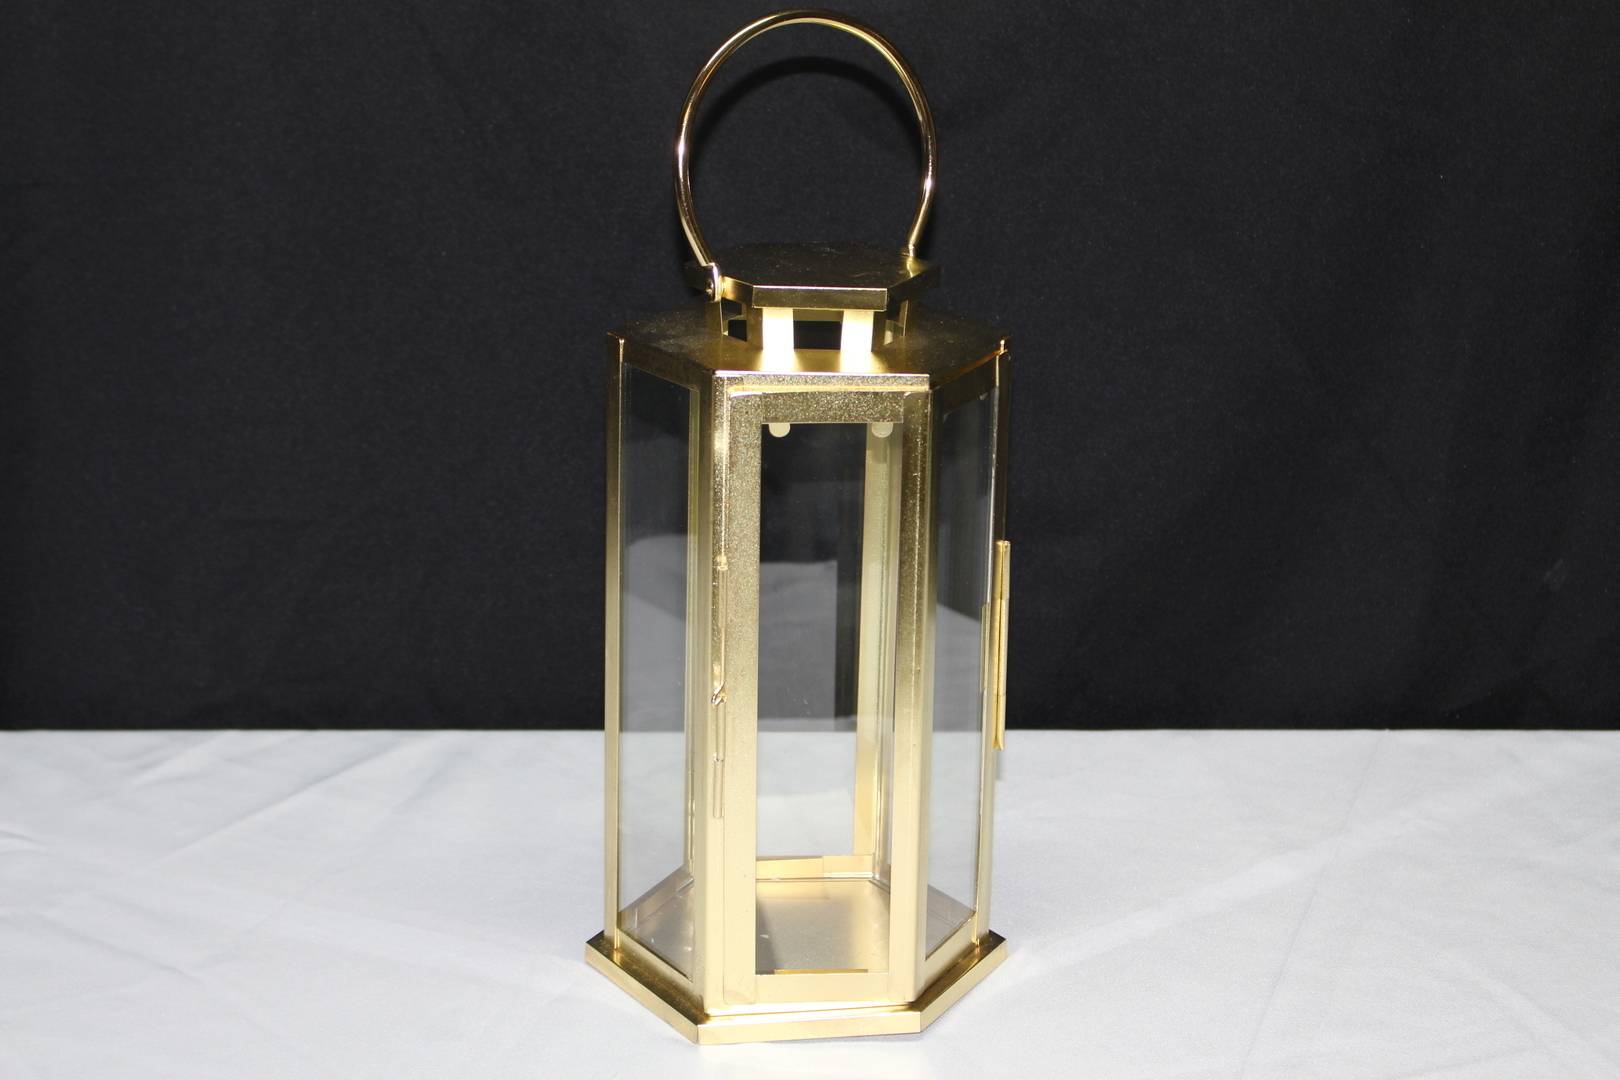 Brass Lantern